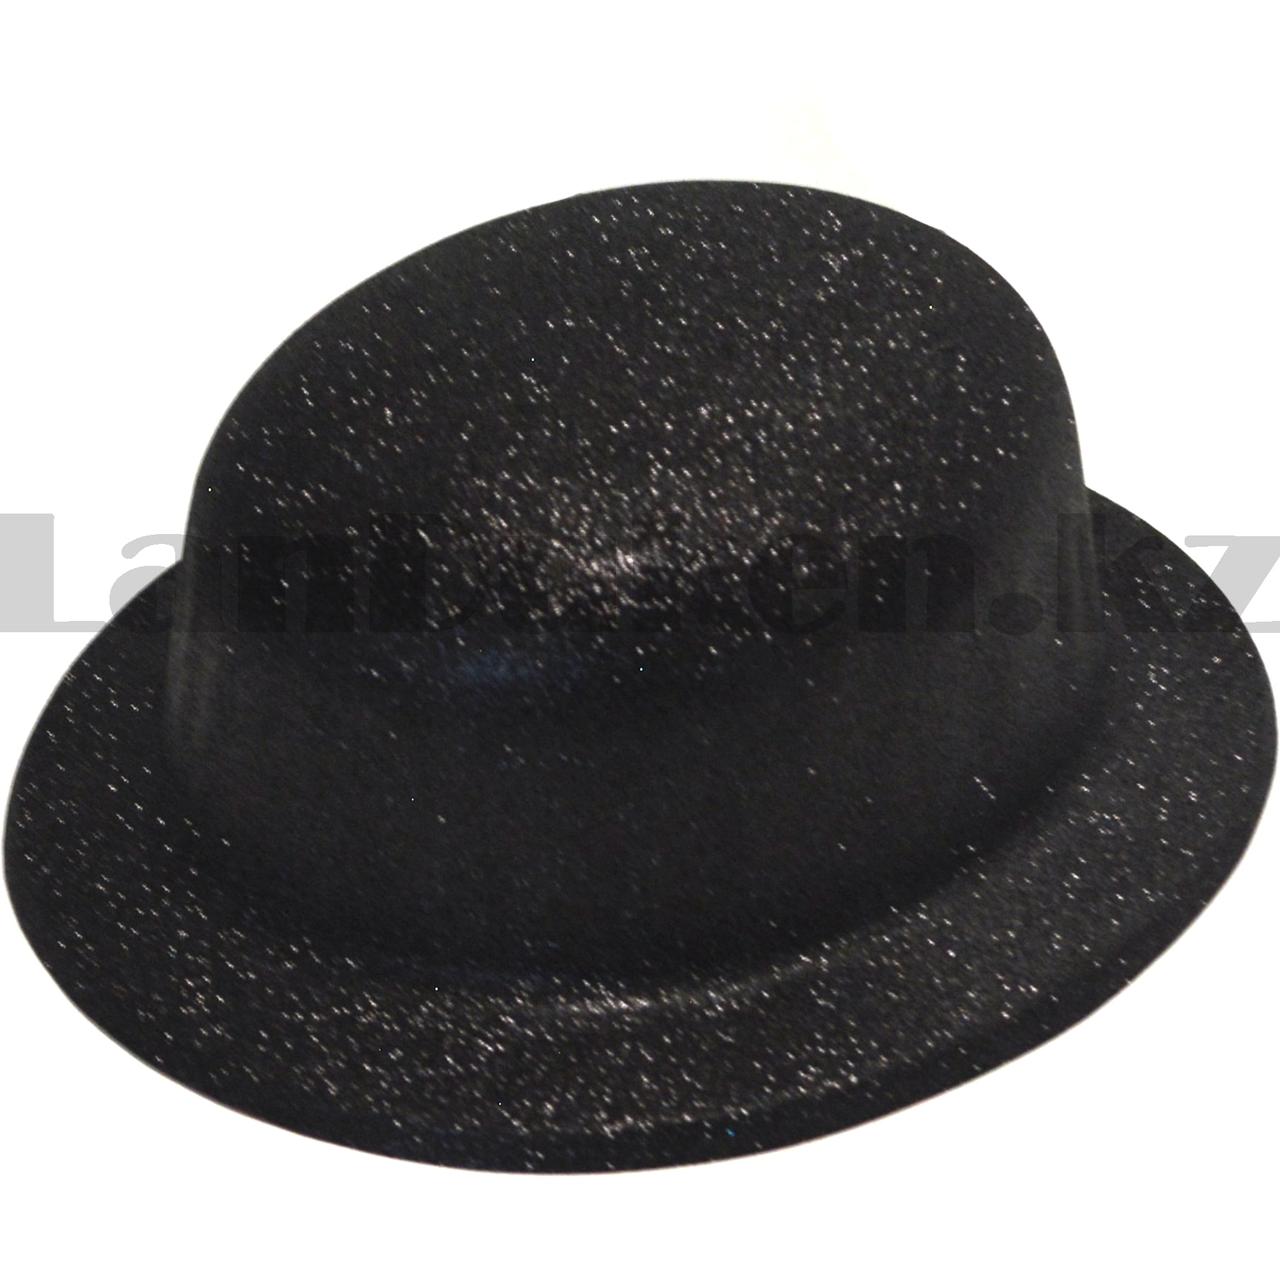 Шляпа котелок карнавальная блестящая черная